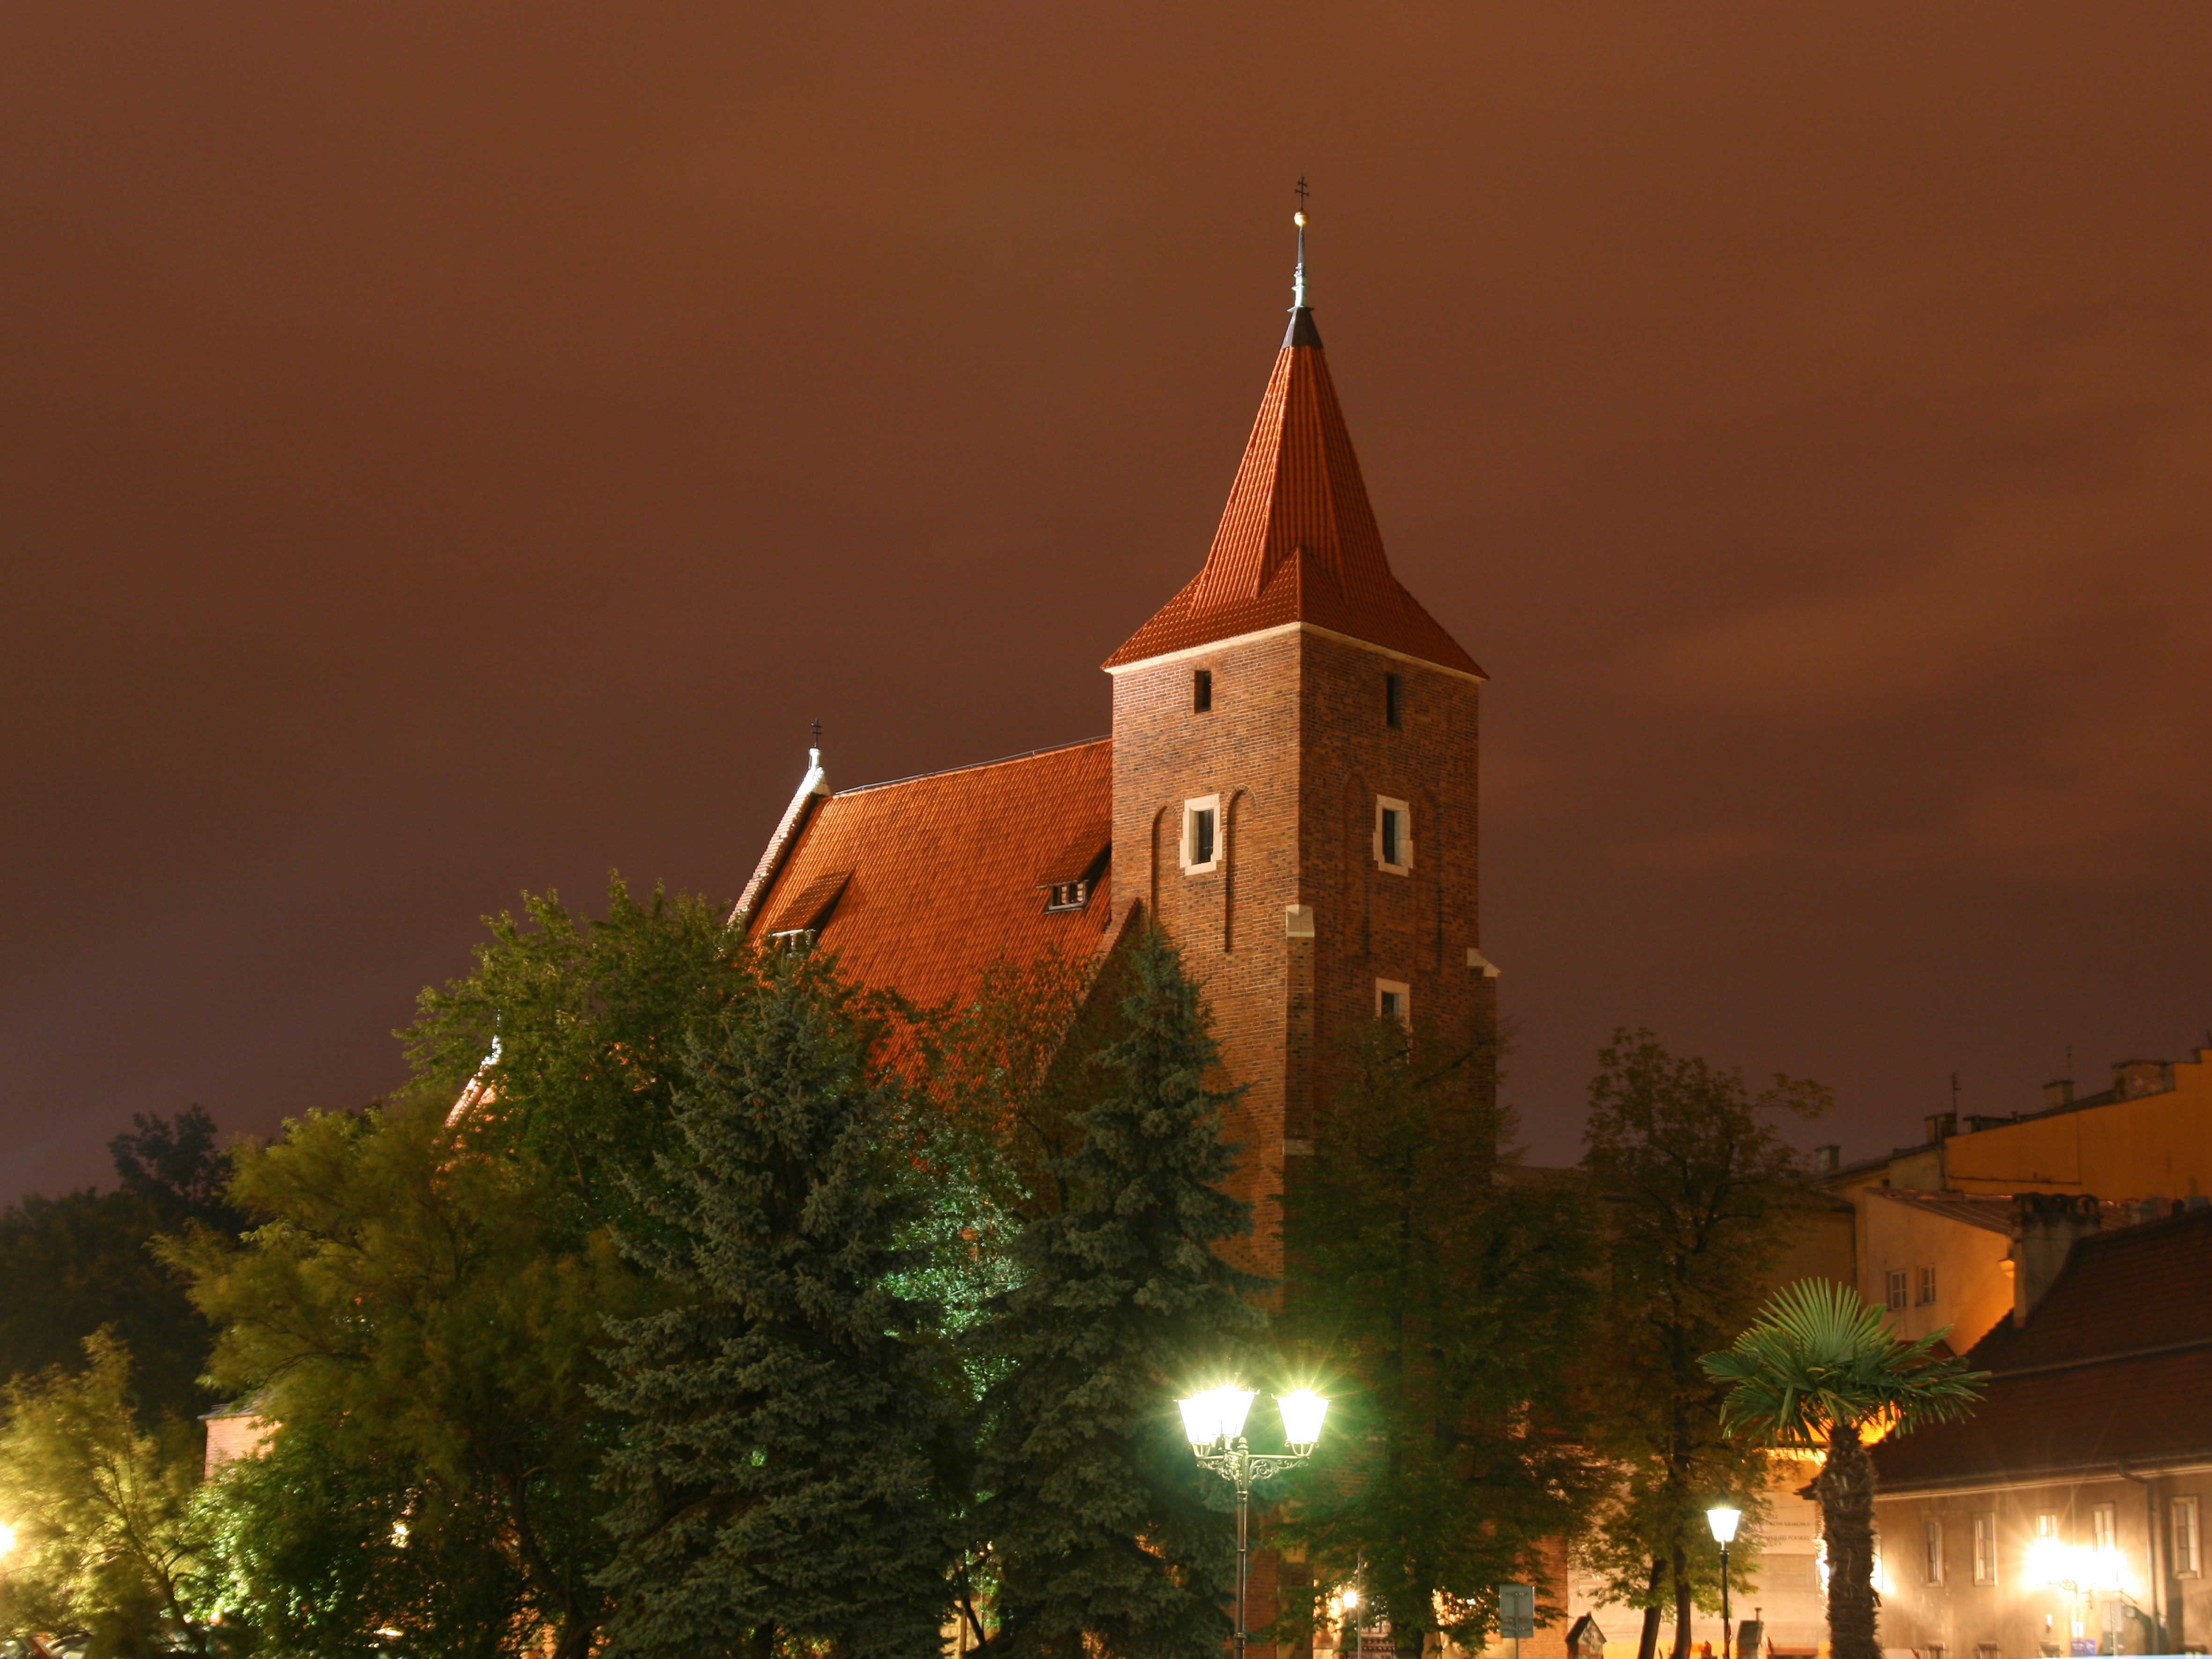 church at night